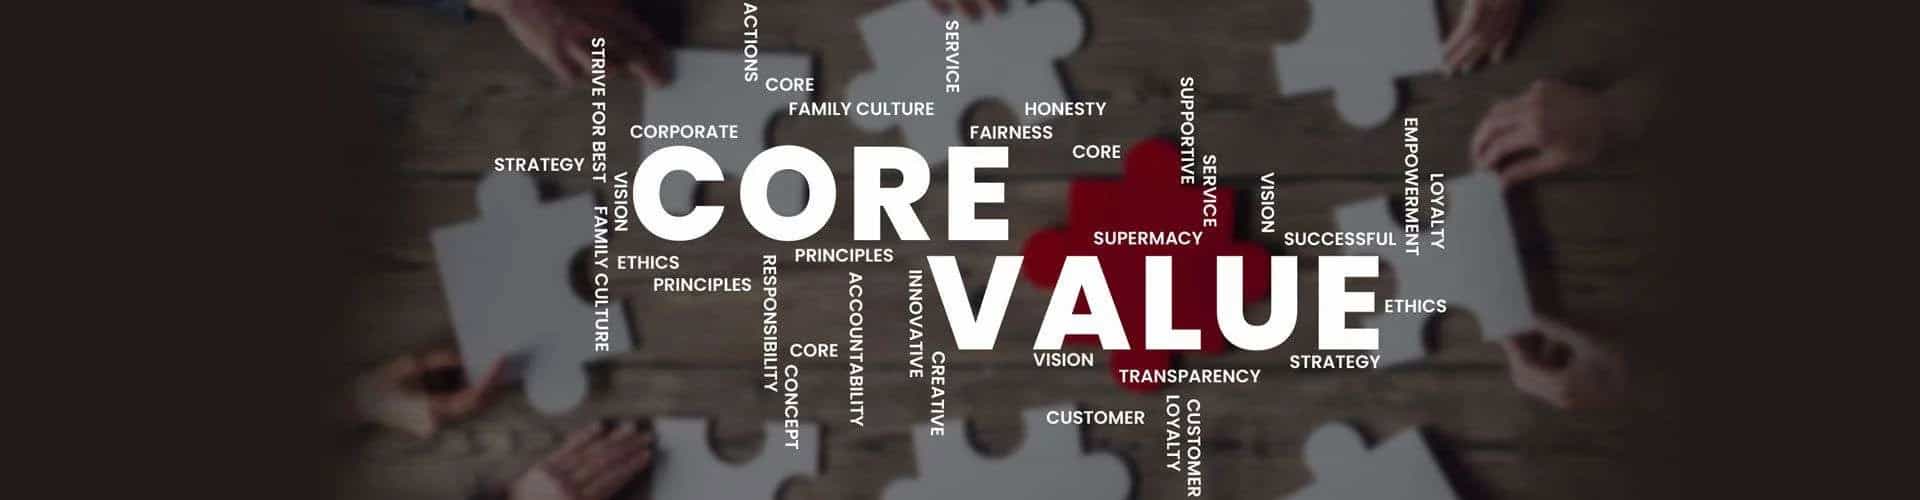 RChilli-Core-Values